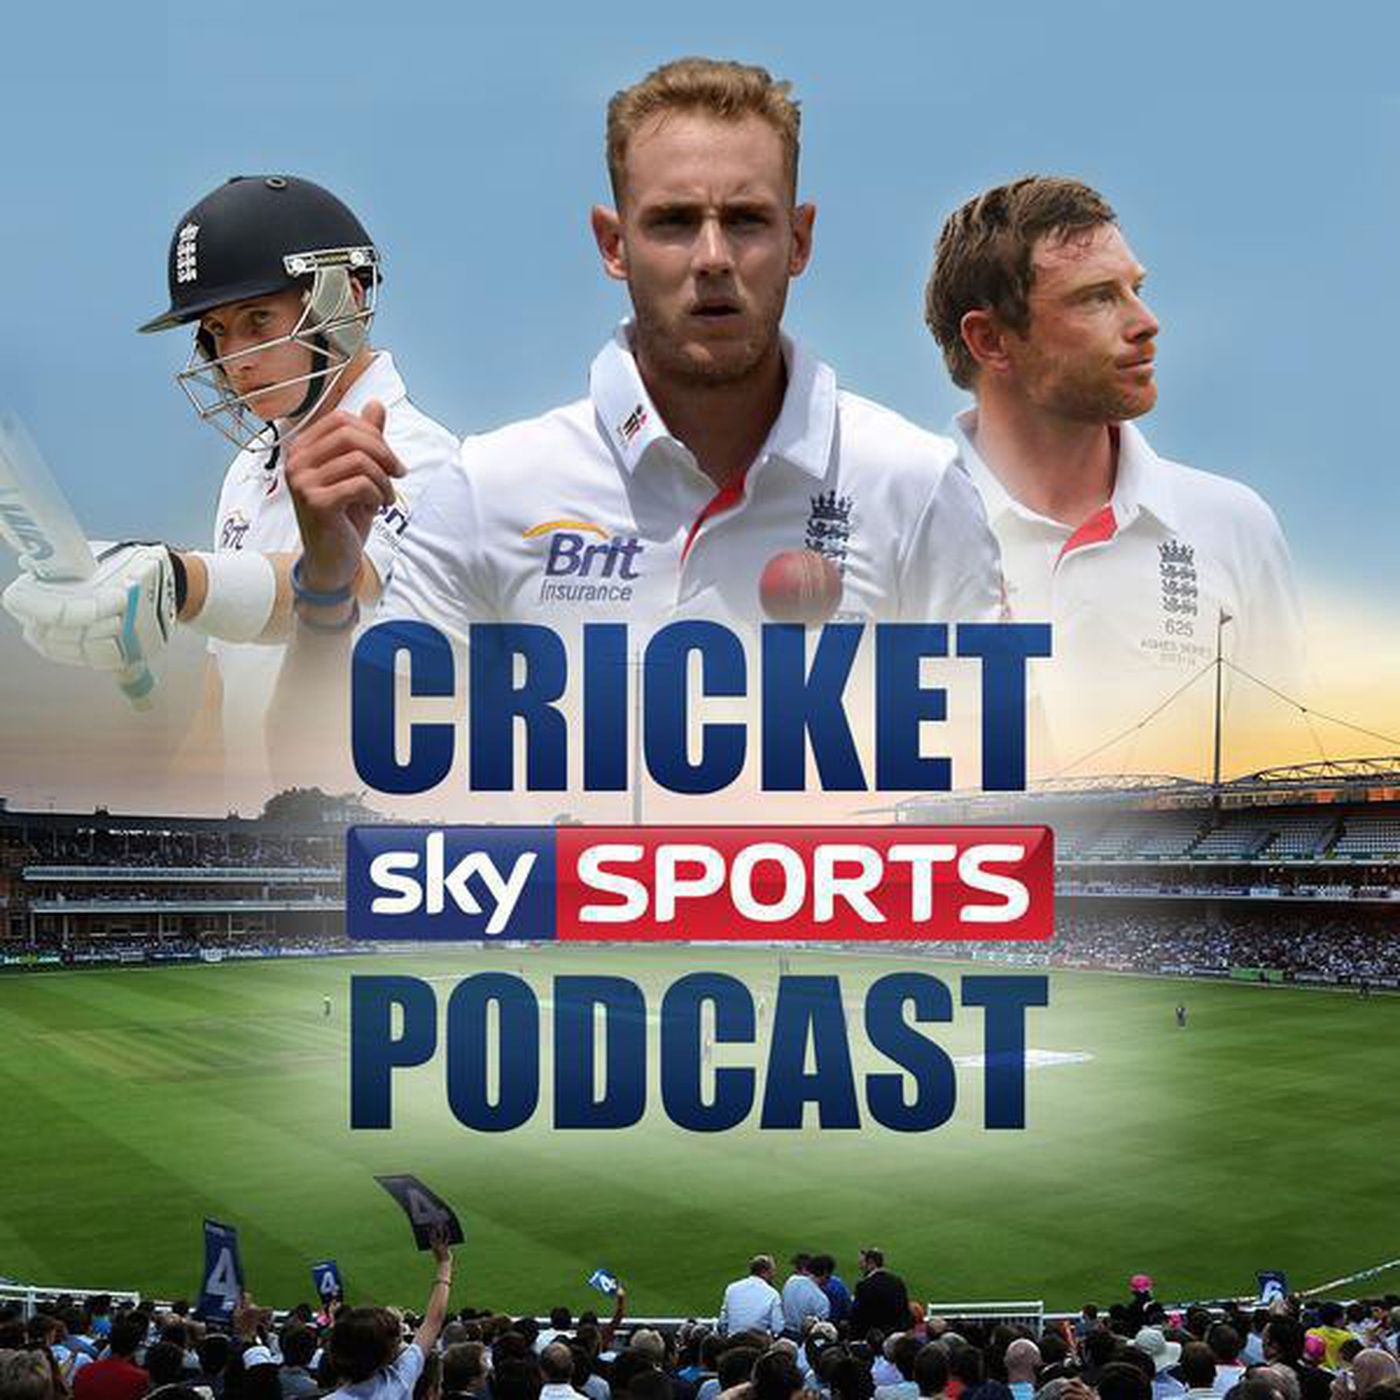 Sky Sports Cricket Podcast - 1st April